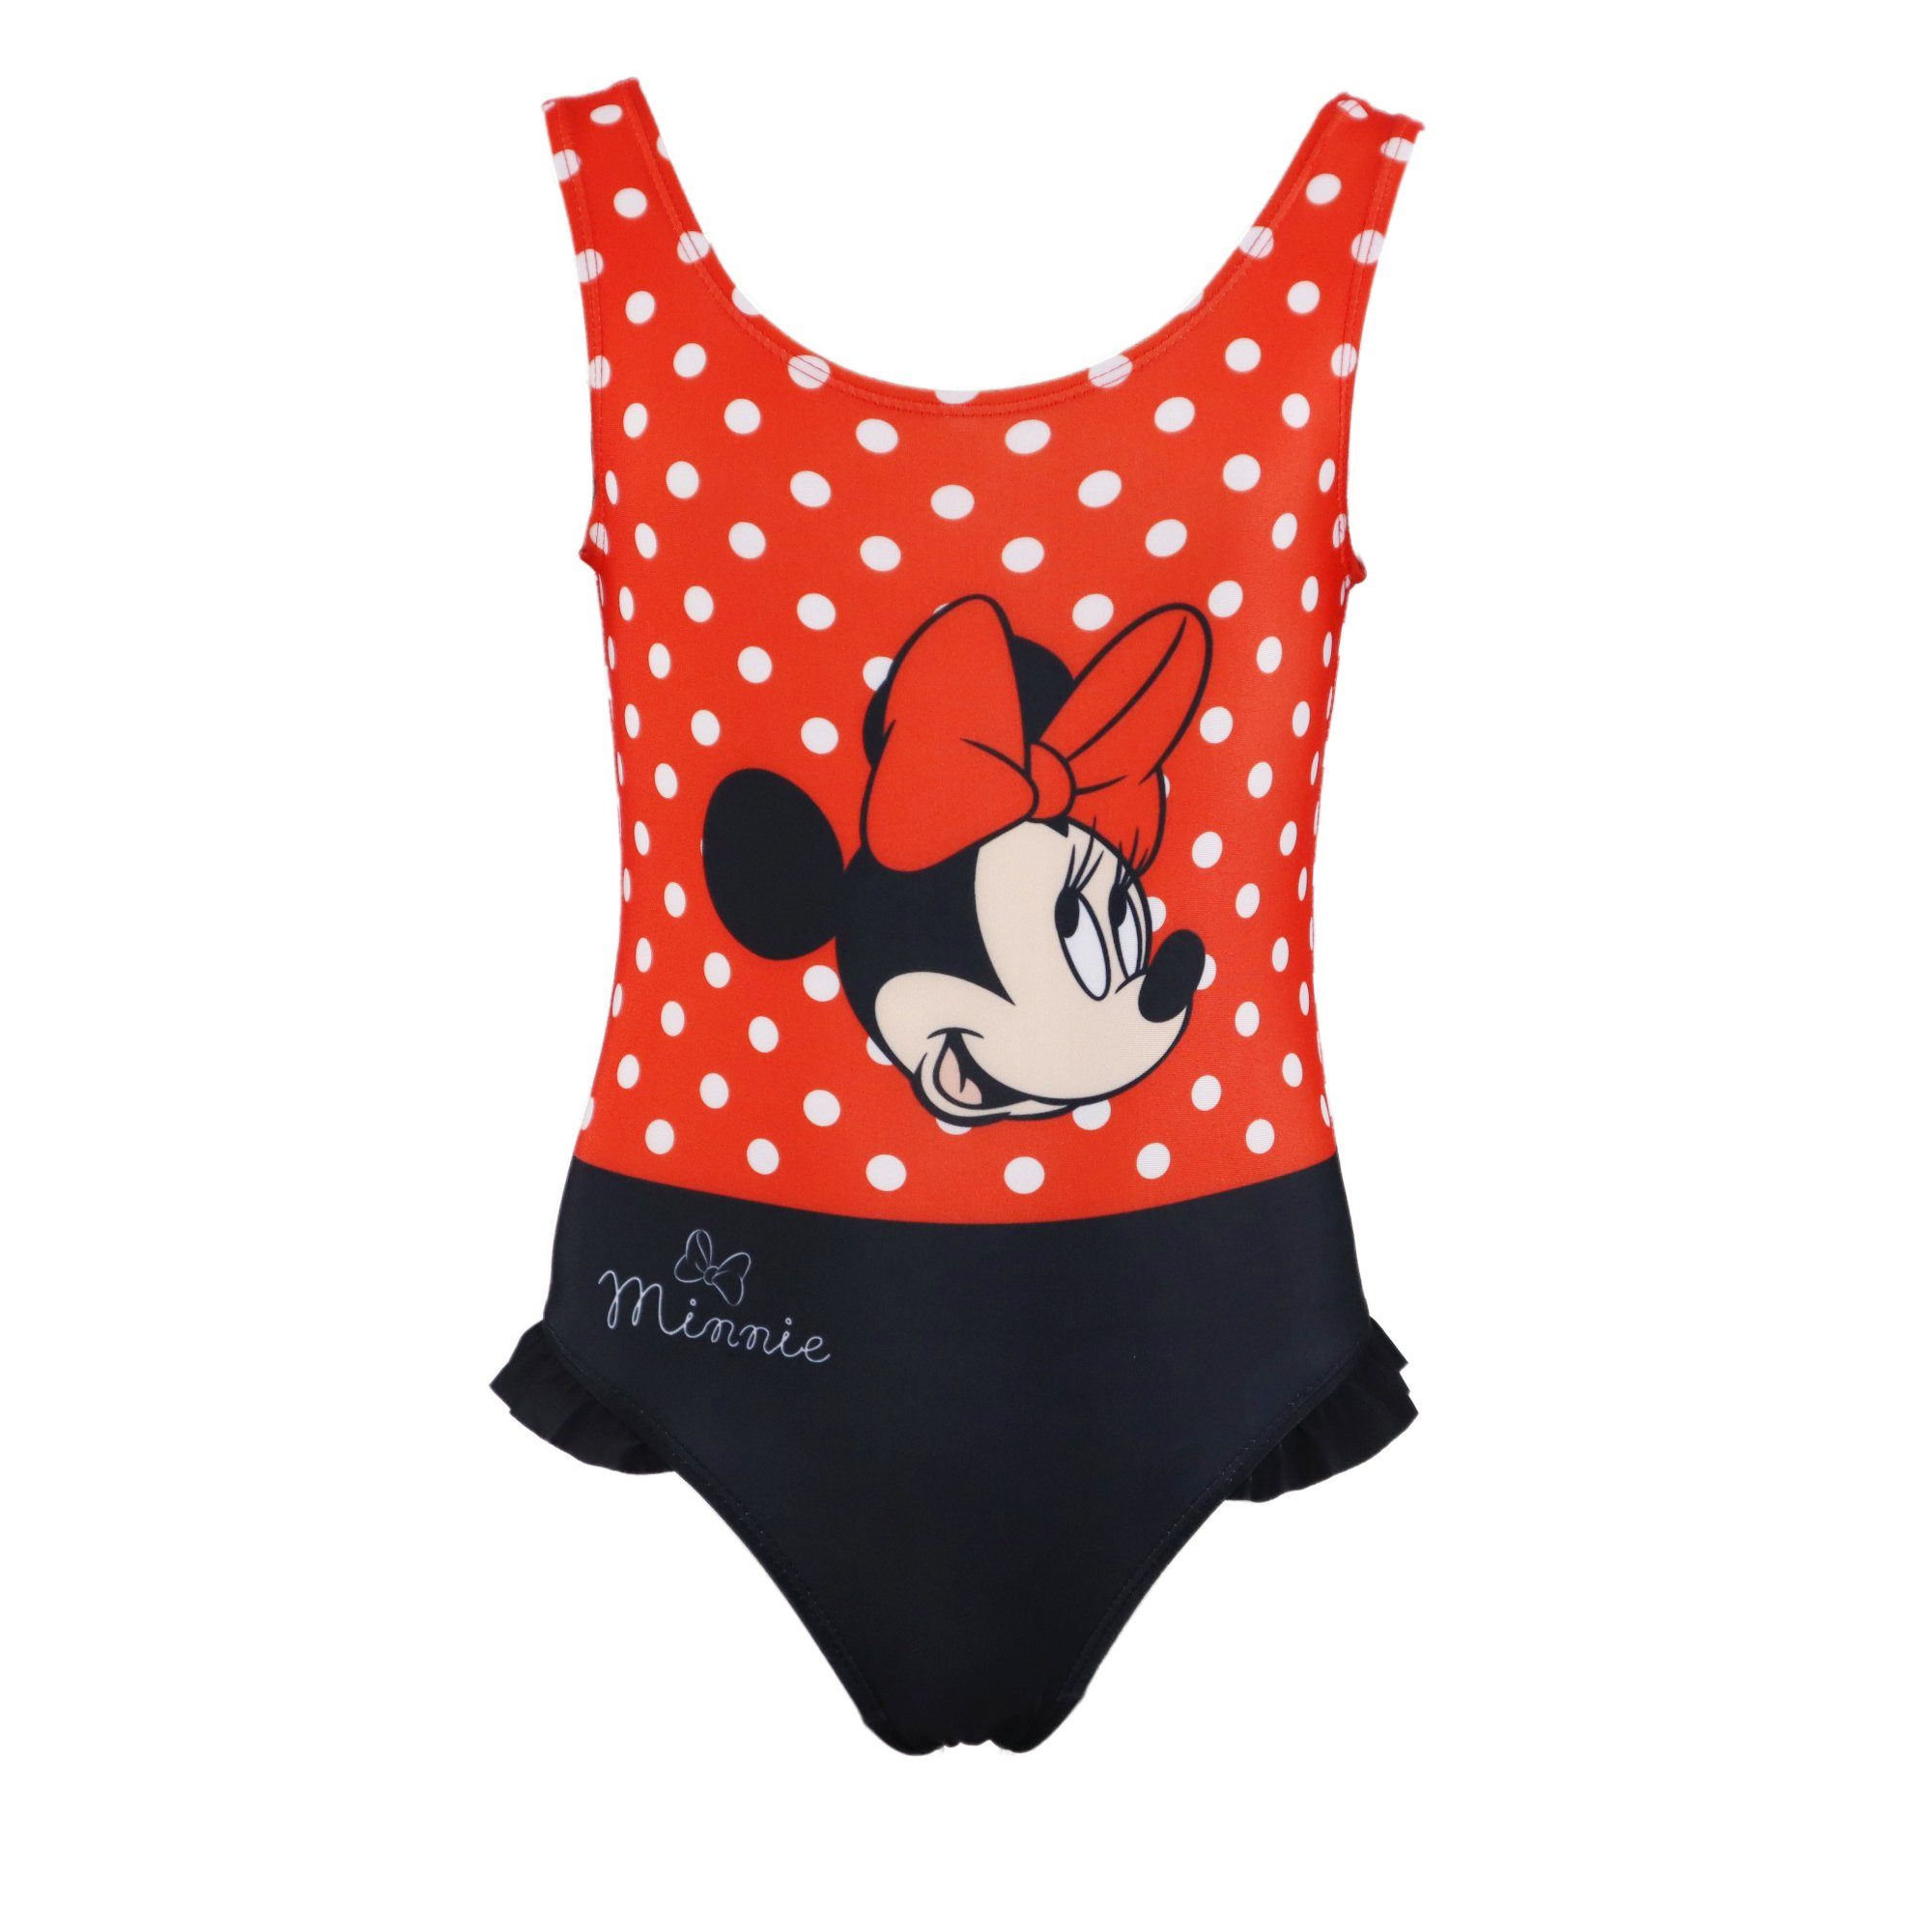 Disney Minnie Mouse Badeanzug Minnie Red and Black Mädchen Kinder Bademode  Gr. 104 bis 134